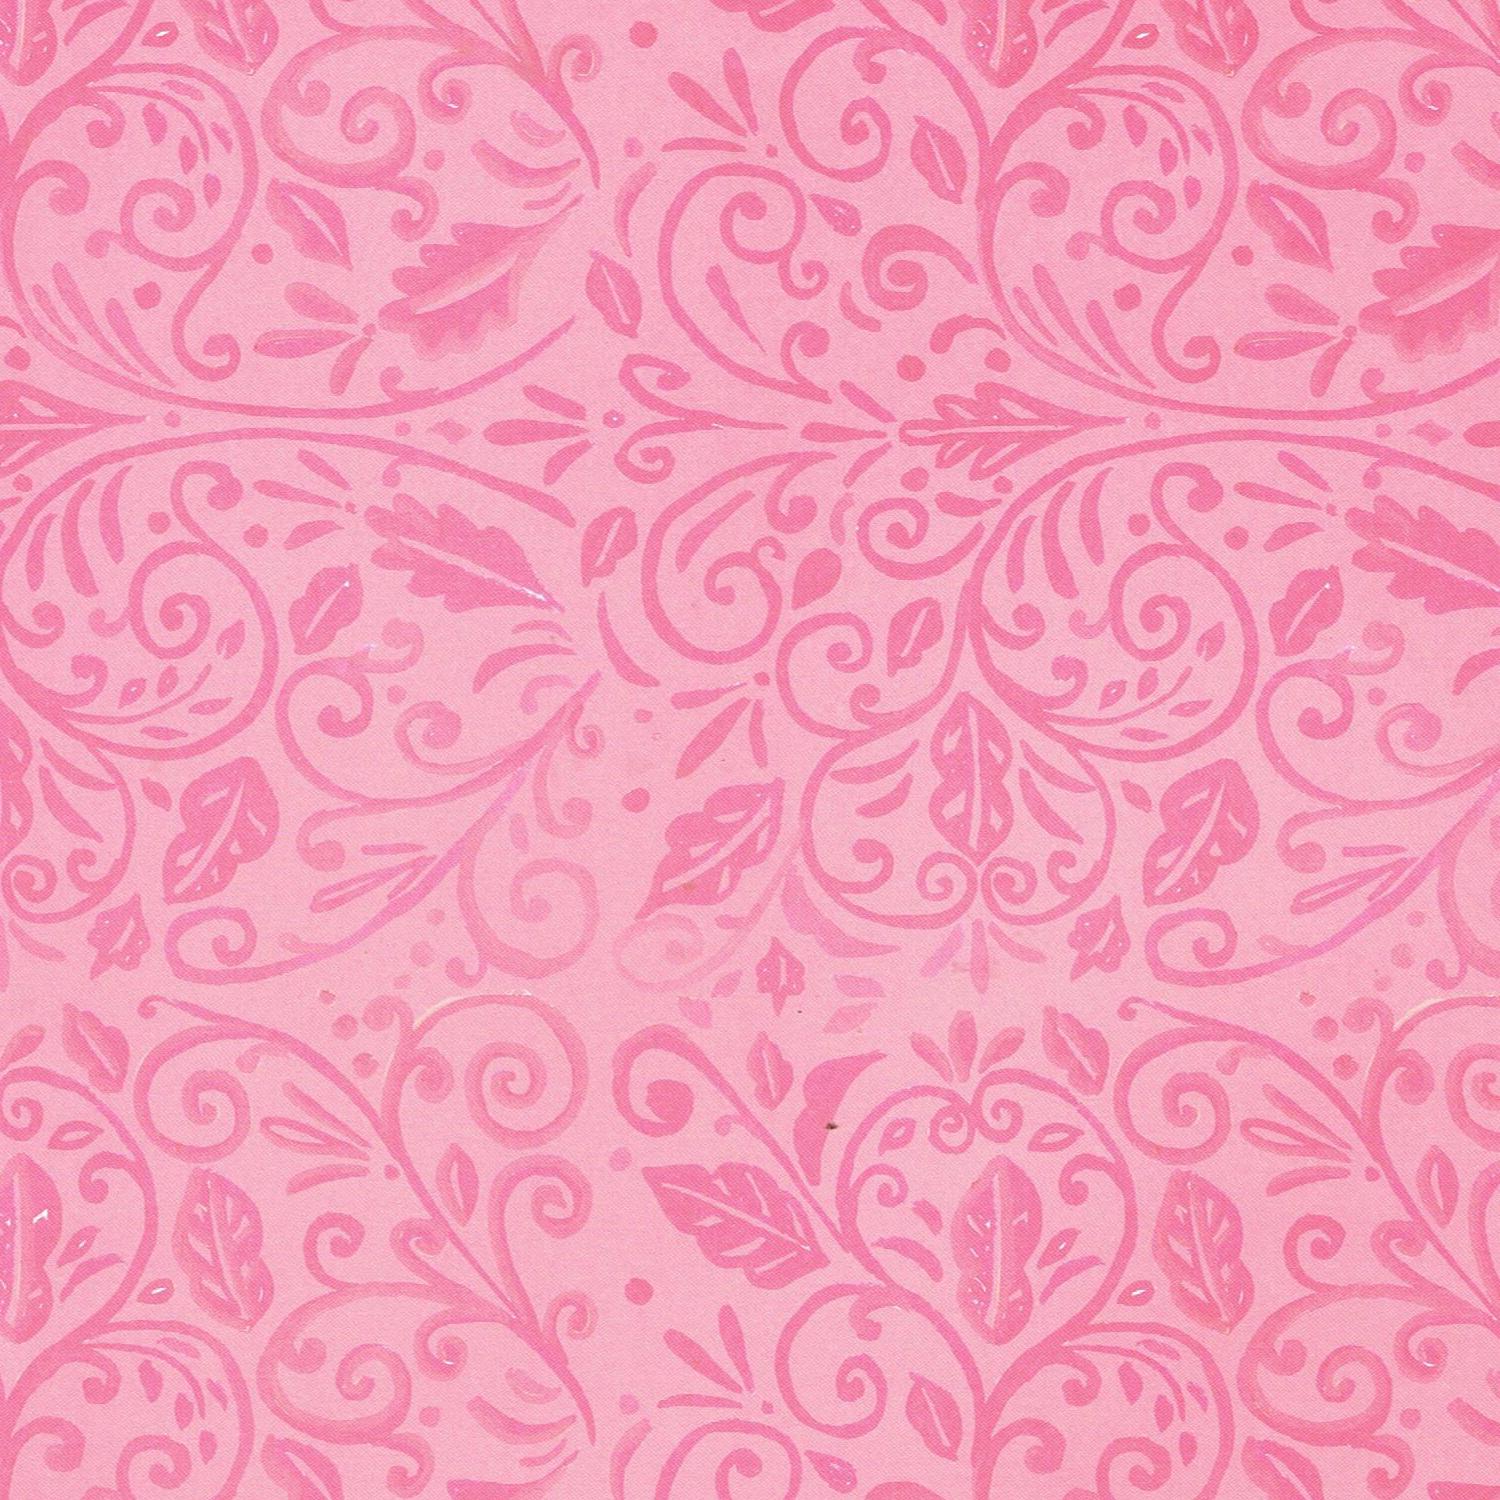 Pink Floral Patterns Design